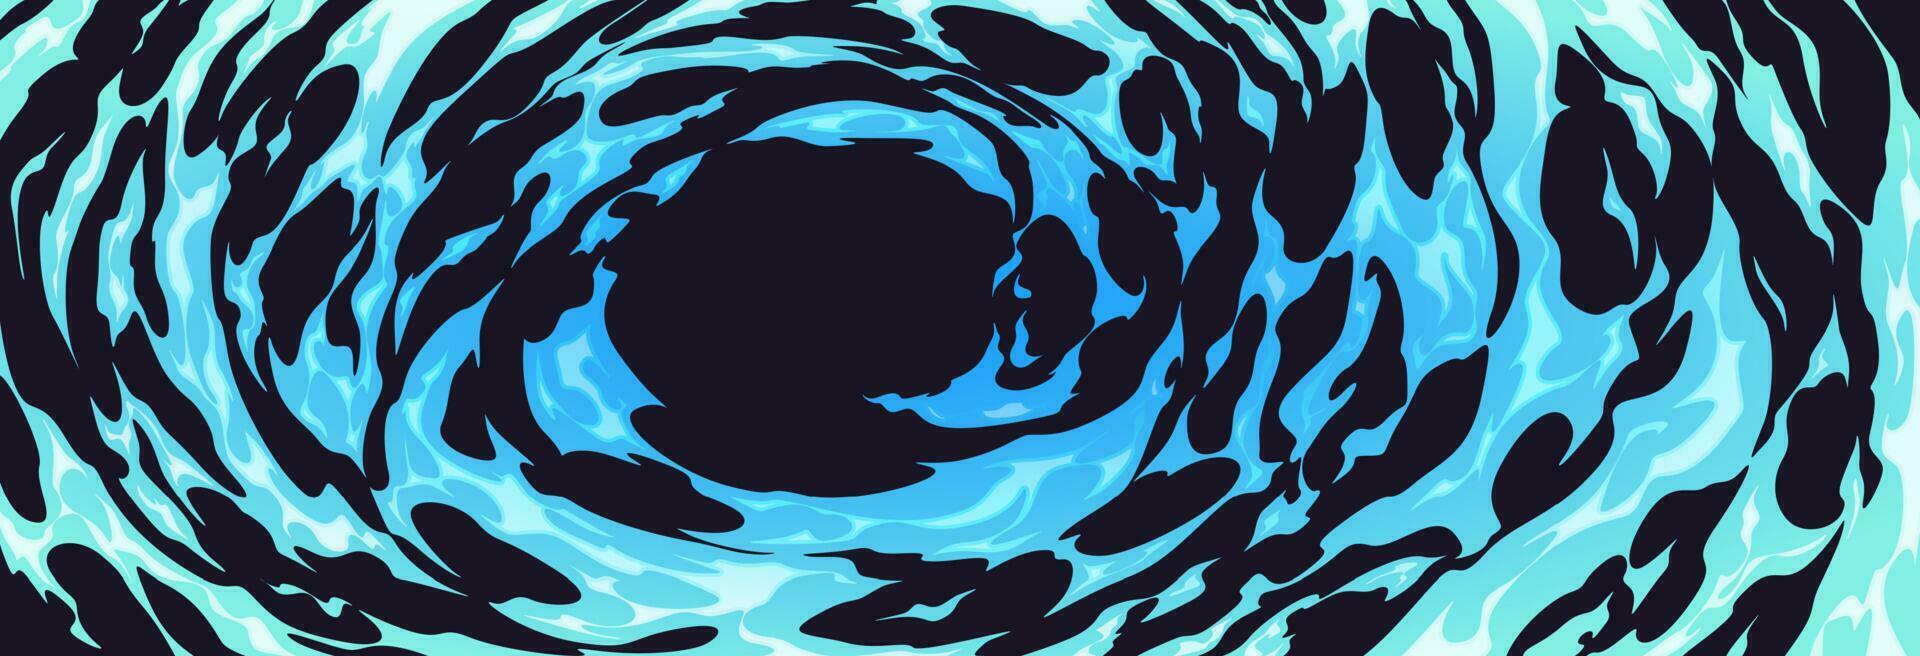 Blau Feuer Wirkung, Karikatur Wasser Comics Hintergrund vektor